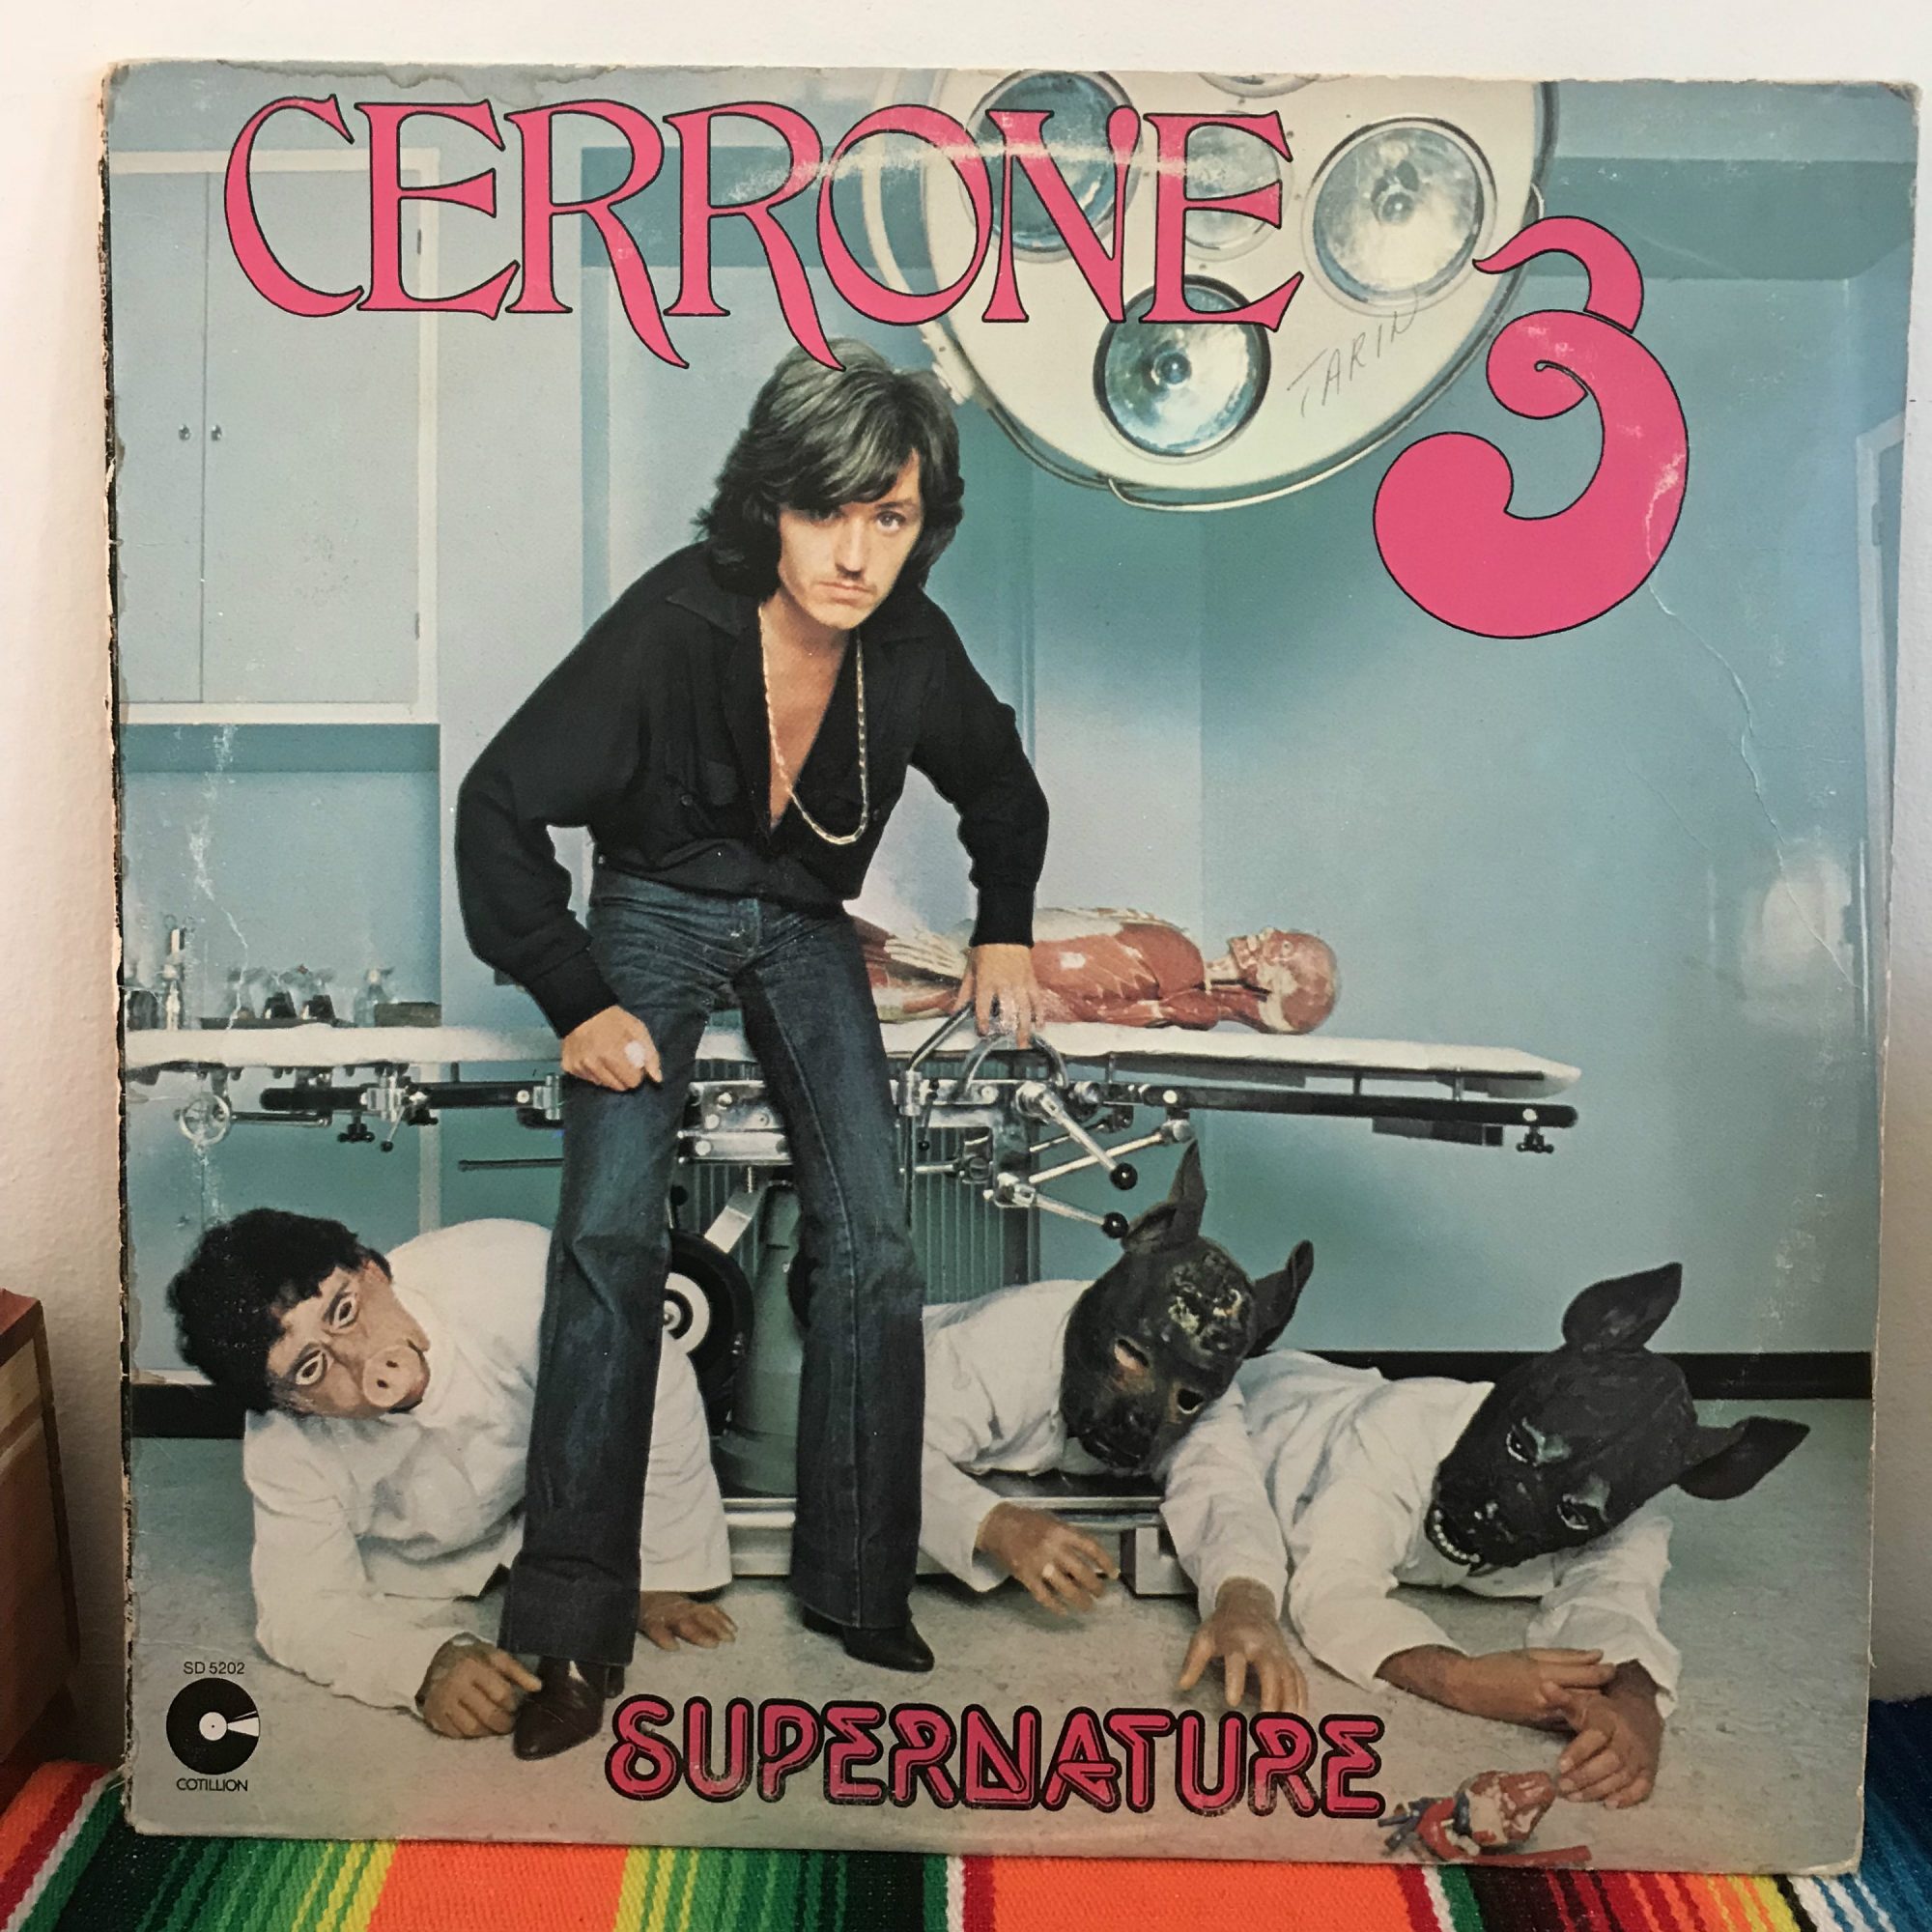 Cerrone - "Supernature"